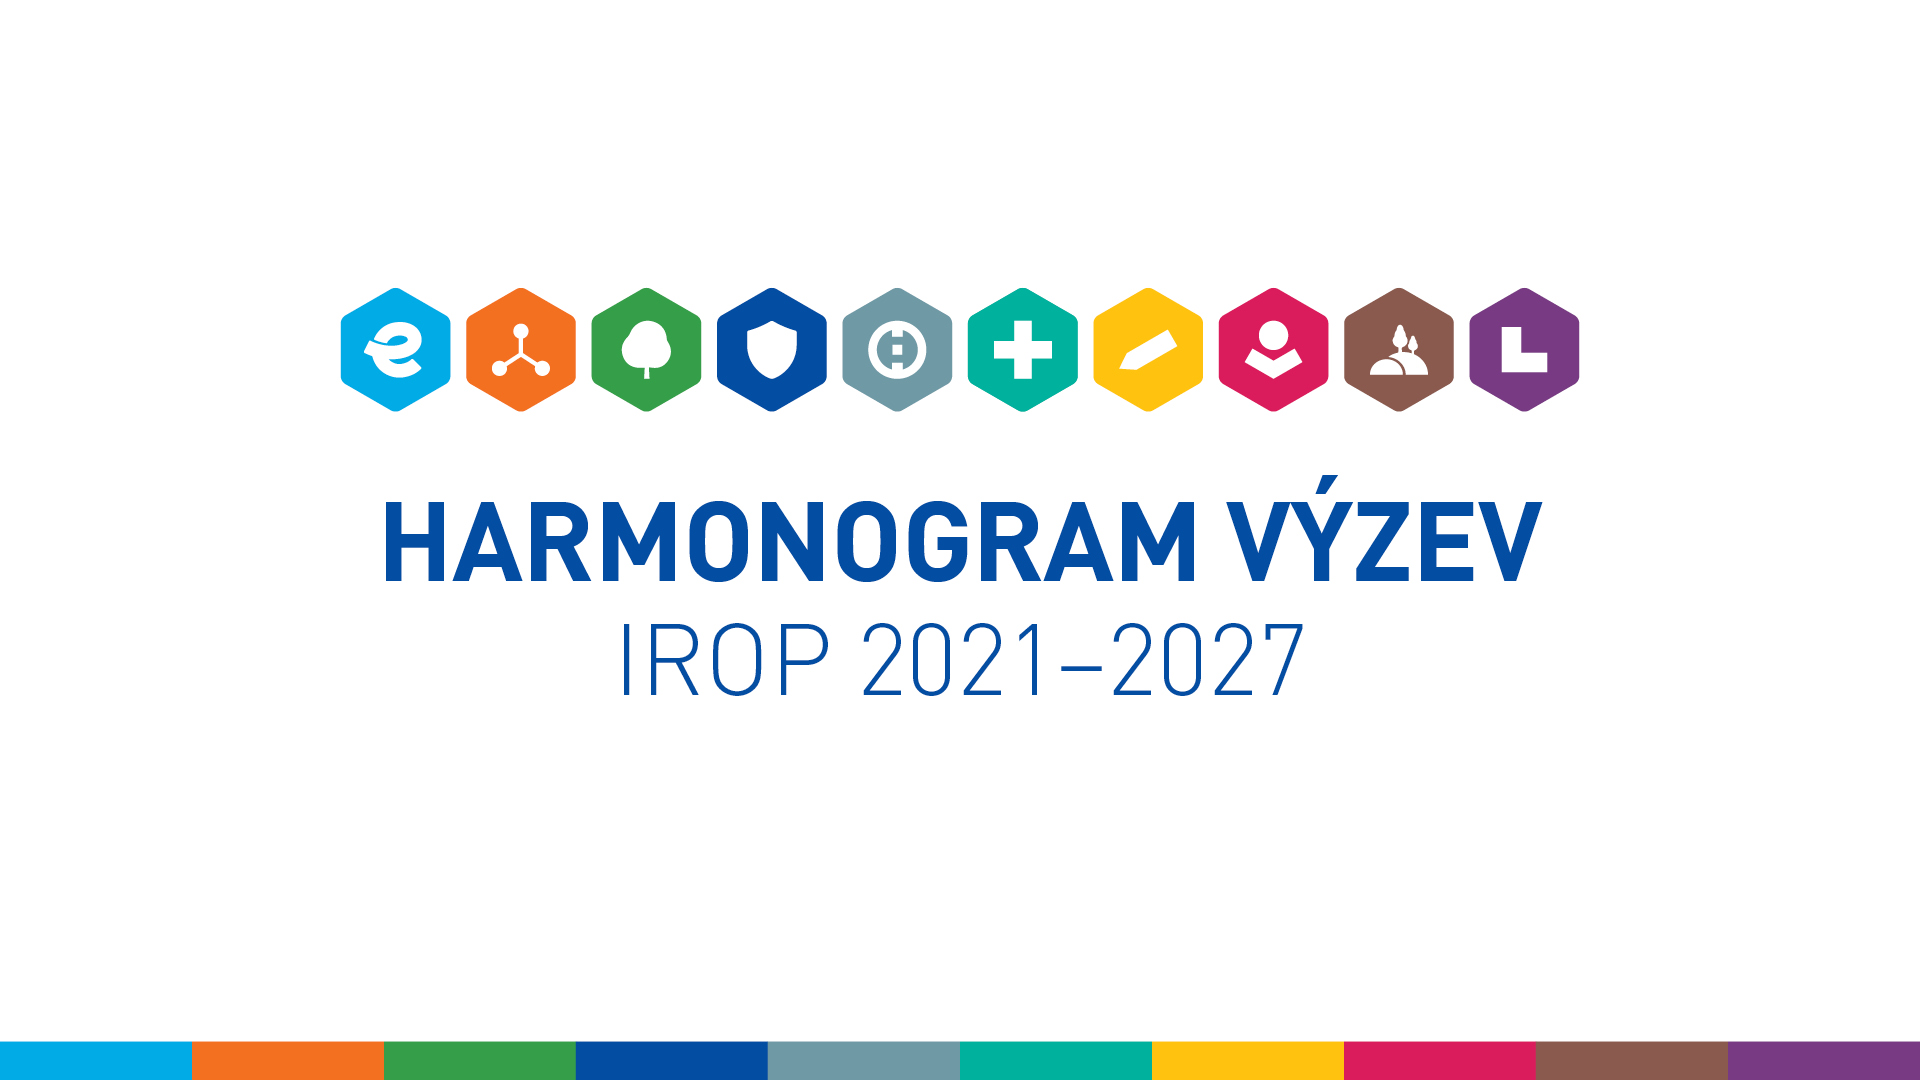 Harmonogram výzev IROP 2014-2020 na rok 2023 a Harmonogramy výzev IROP 2021-2027 na roky 2022, 2023 a 2024